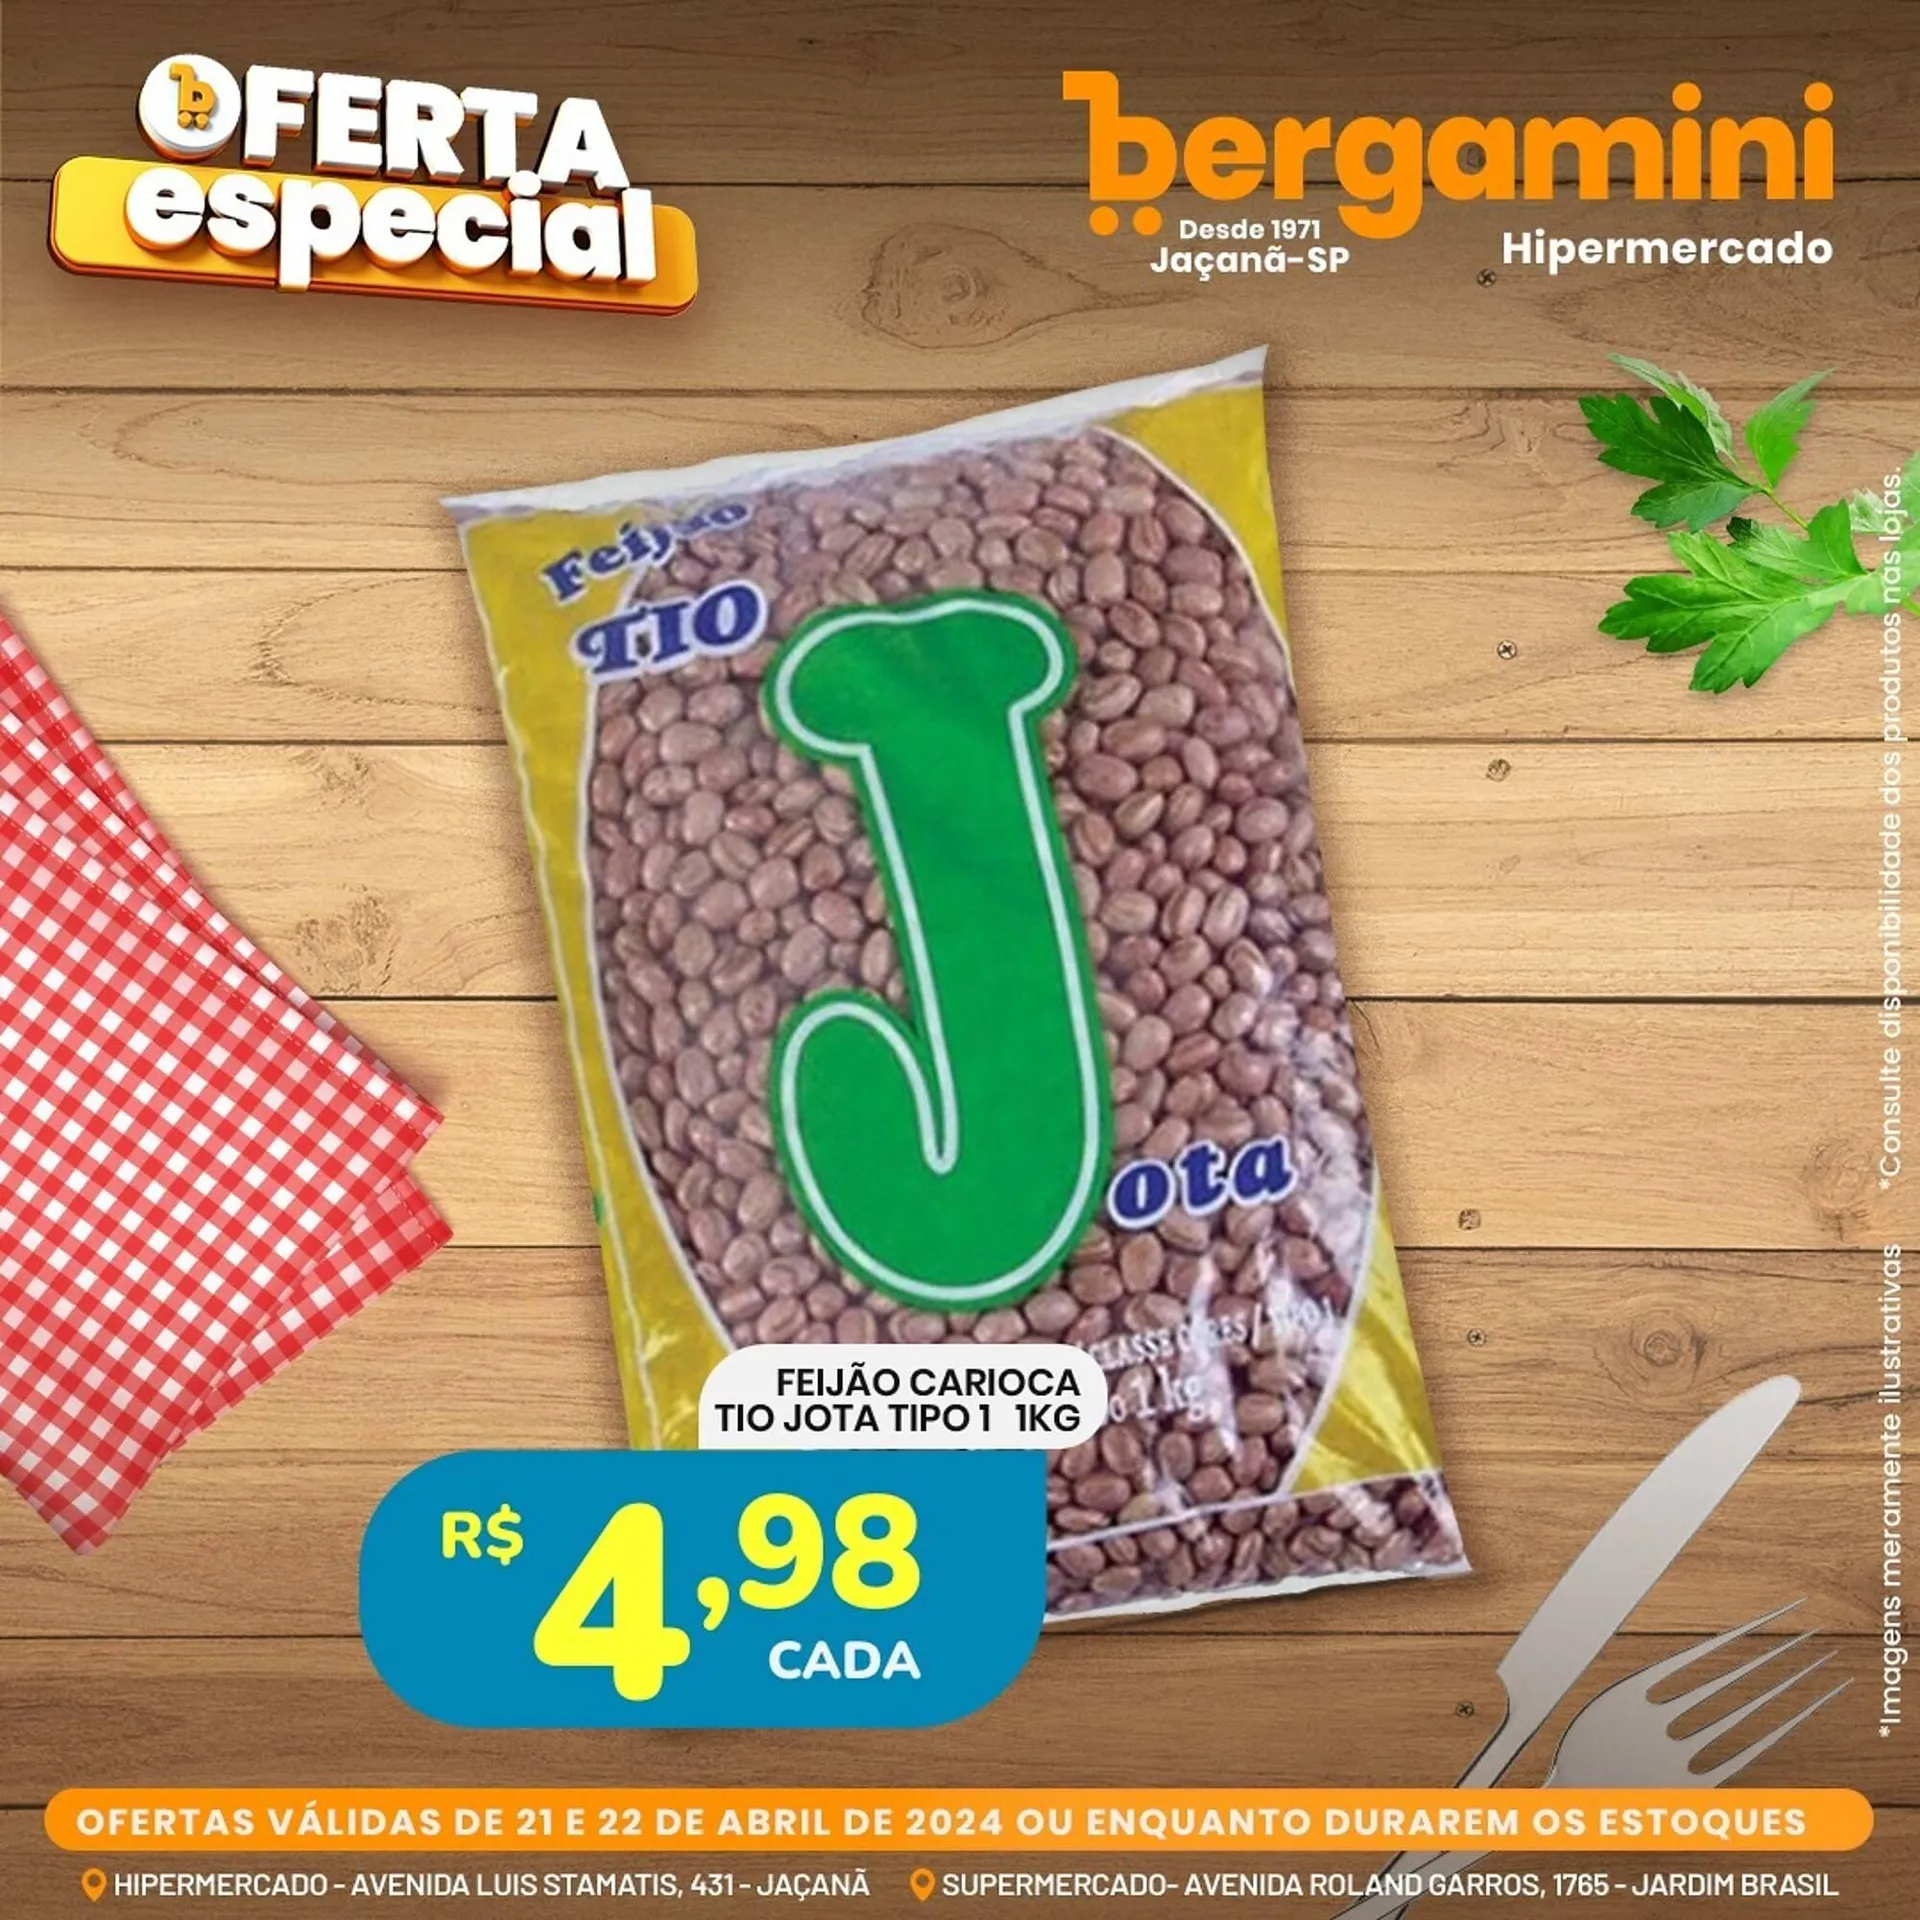 Catálogo Supermercado Bergamini - 2